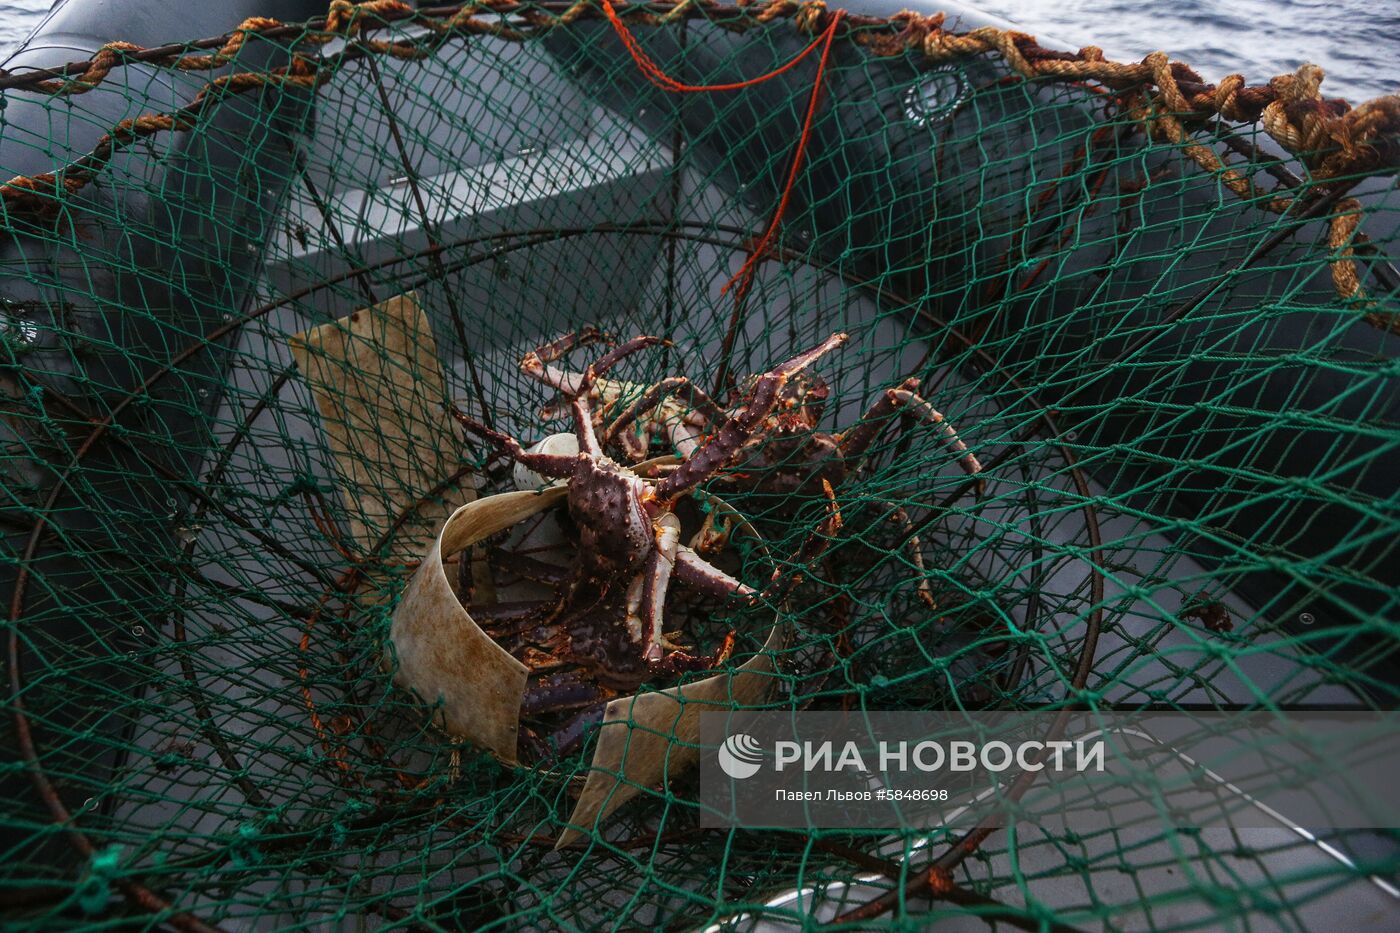 Рейд пограничного управления ФСБ России по поиску браконьеров в Баренцевом море